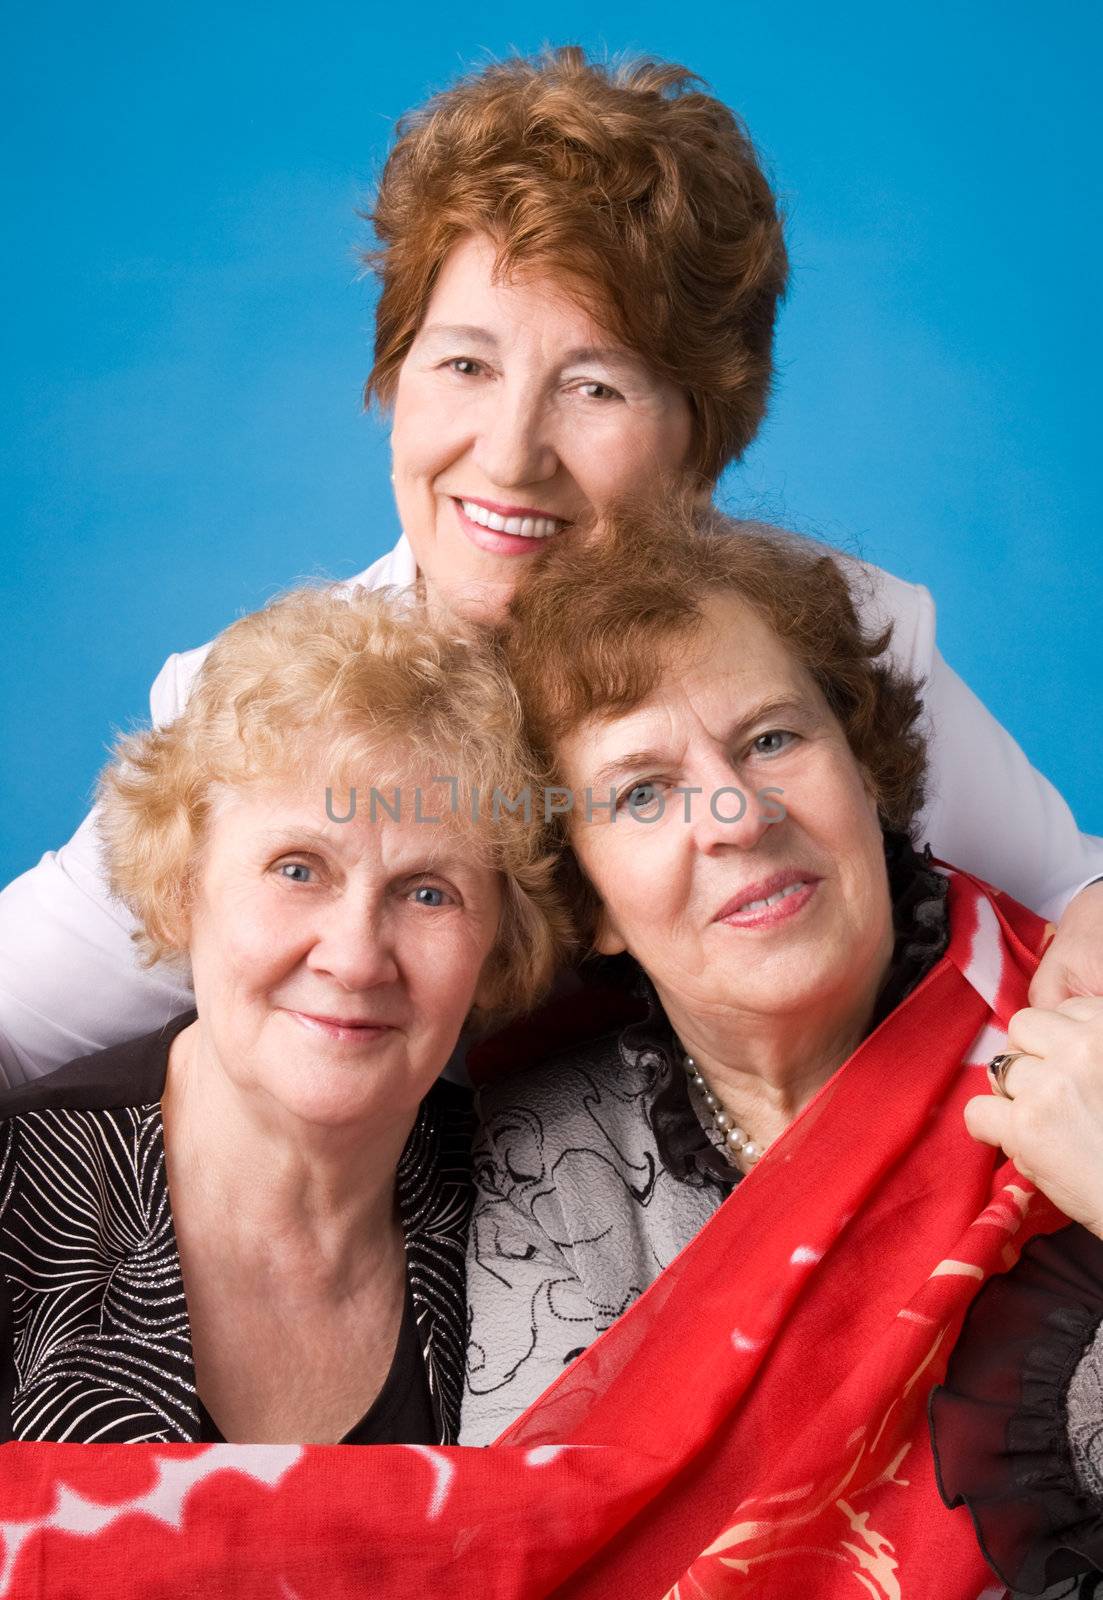 A portrait of three cheerful elderly women on a dark blue background.